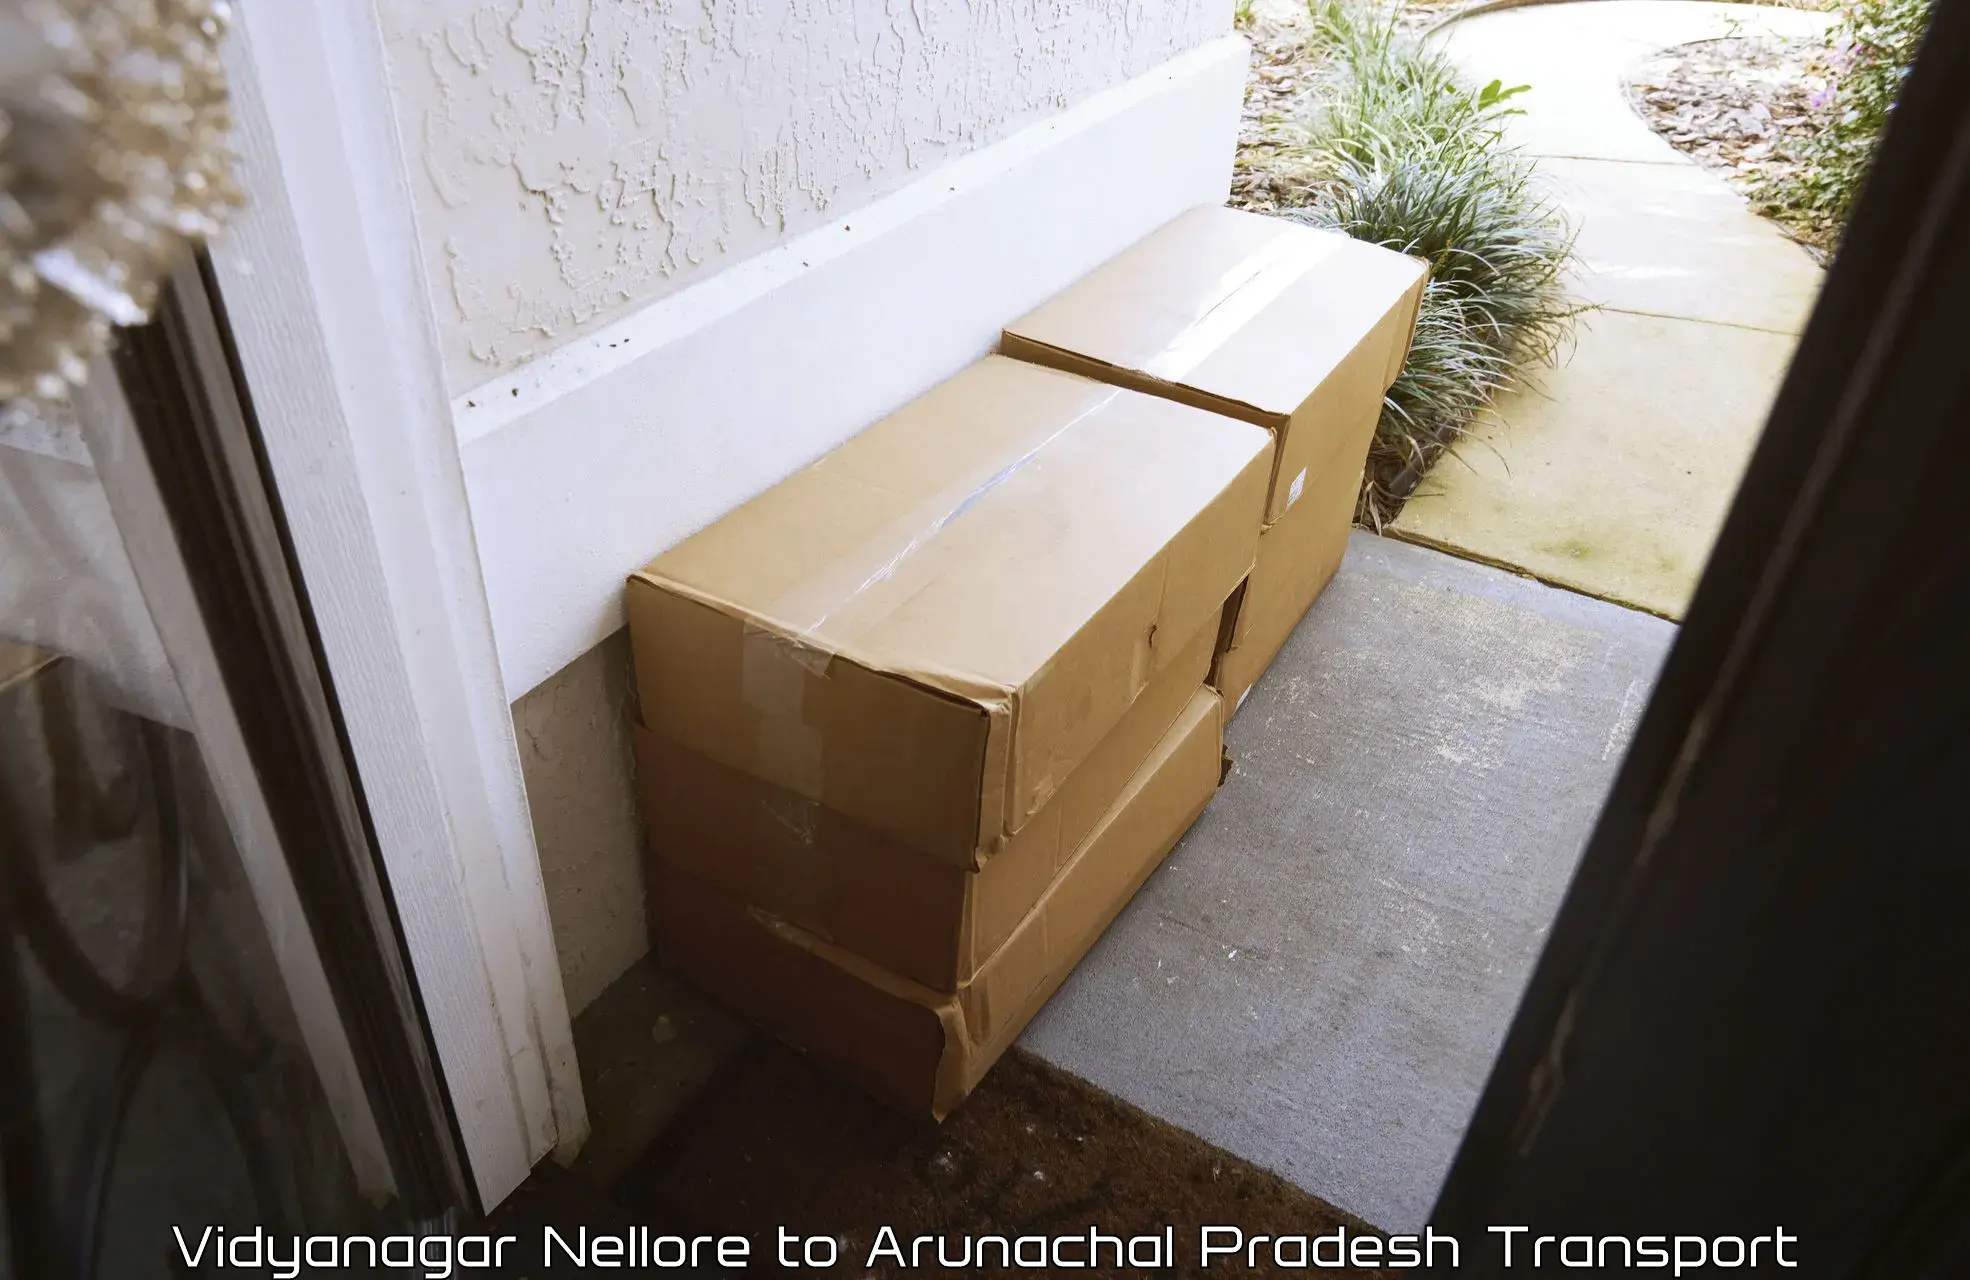 Goods delivery service Vidyanagar Nellore to Deomali